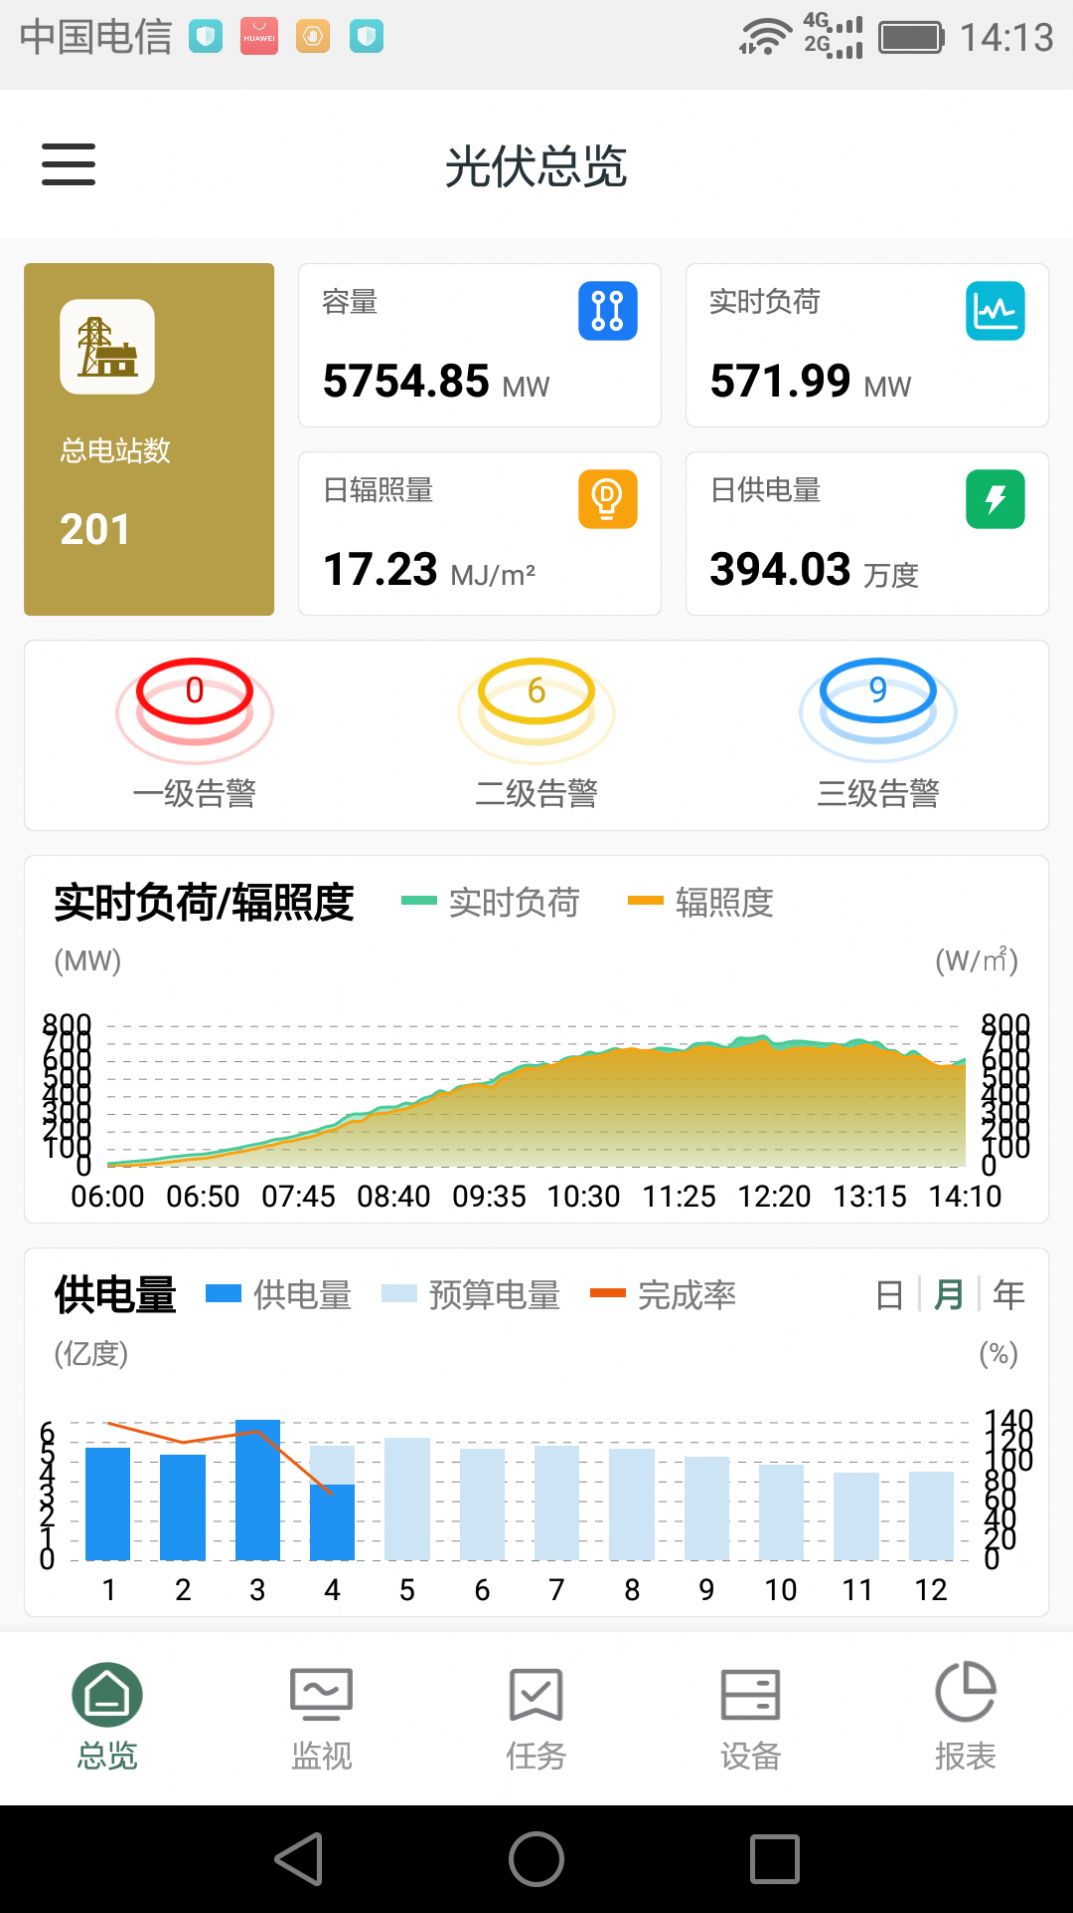 鑫翼连运维管理系统企业版app最新版图片4